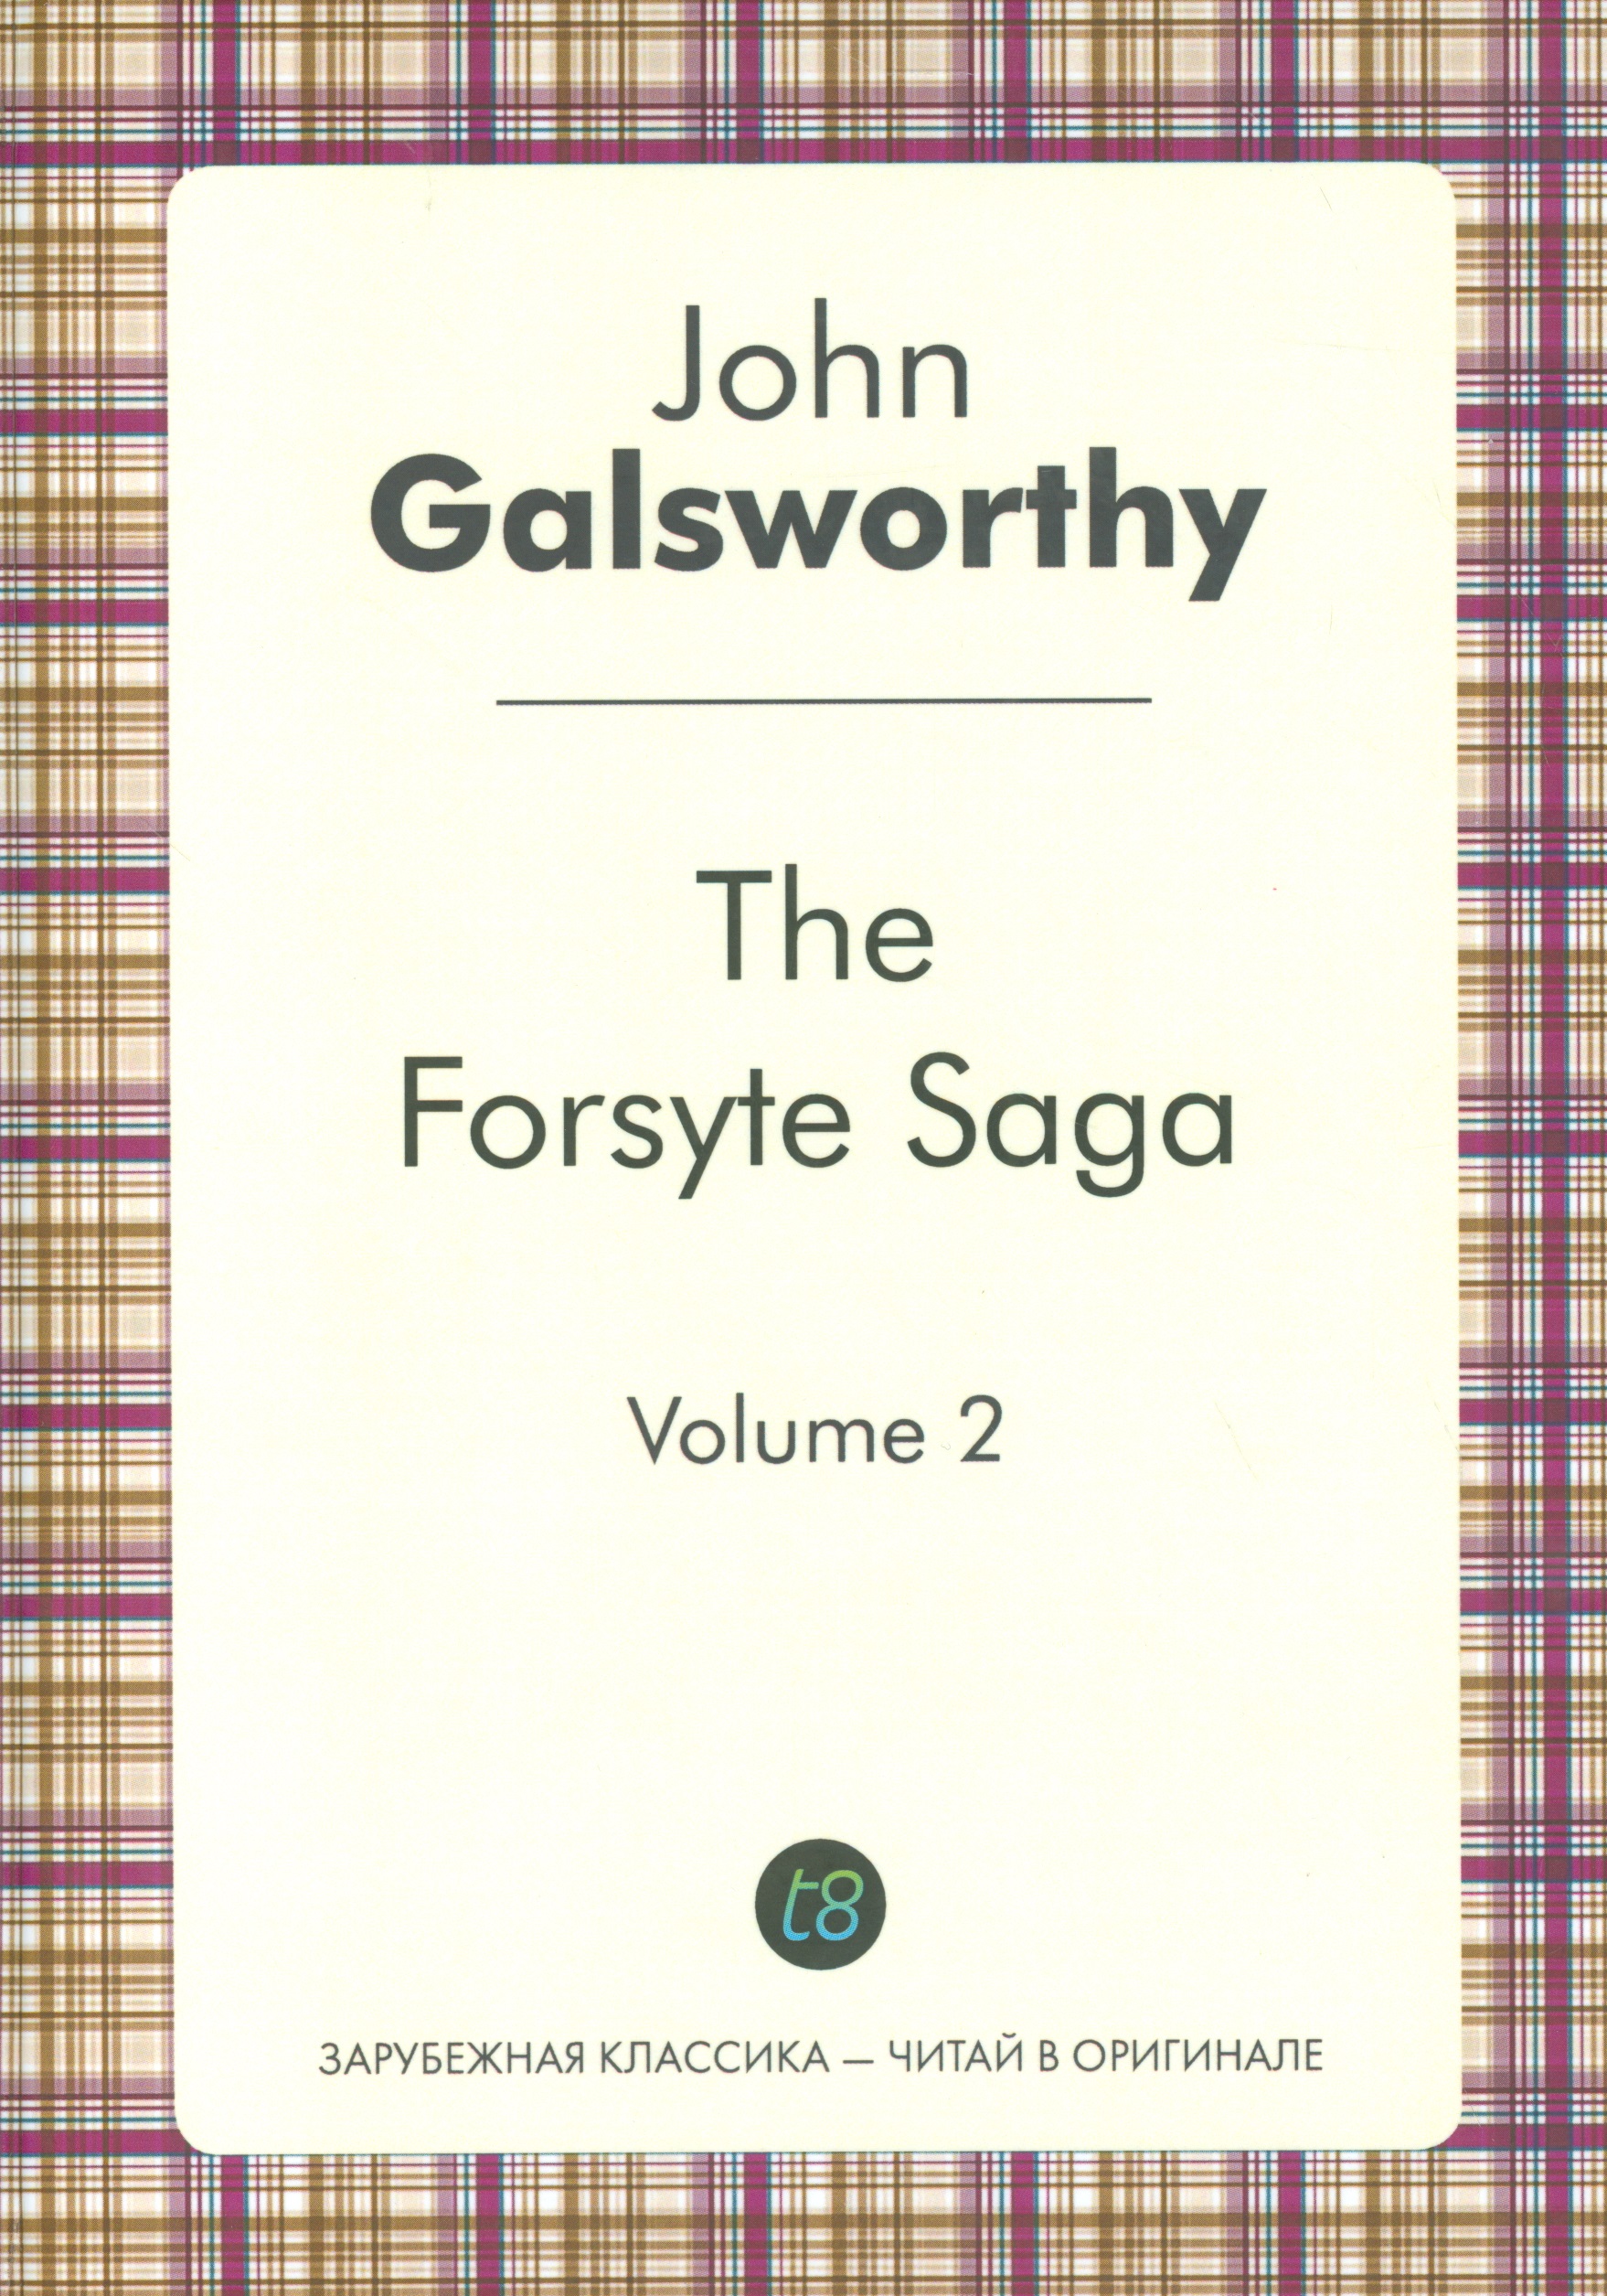 Голсуорси Джон The Forsyte Saga. Vol. 2. = Сага о Форсайтах. Т. 2: цикл на анг.яз. голсуорси джон the forsyte saga volume 2